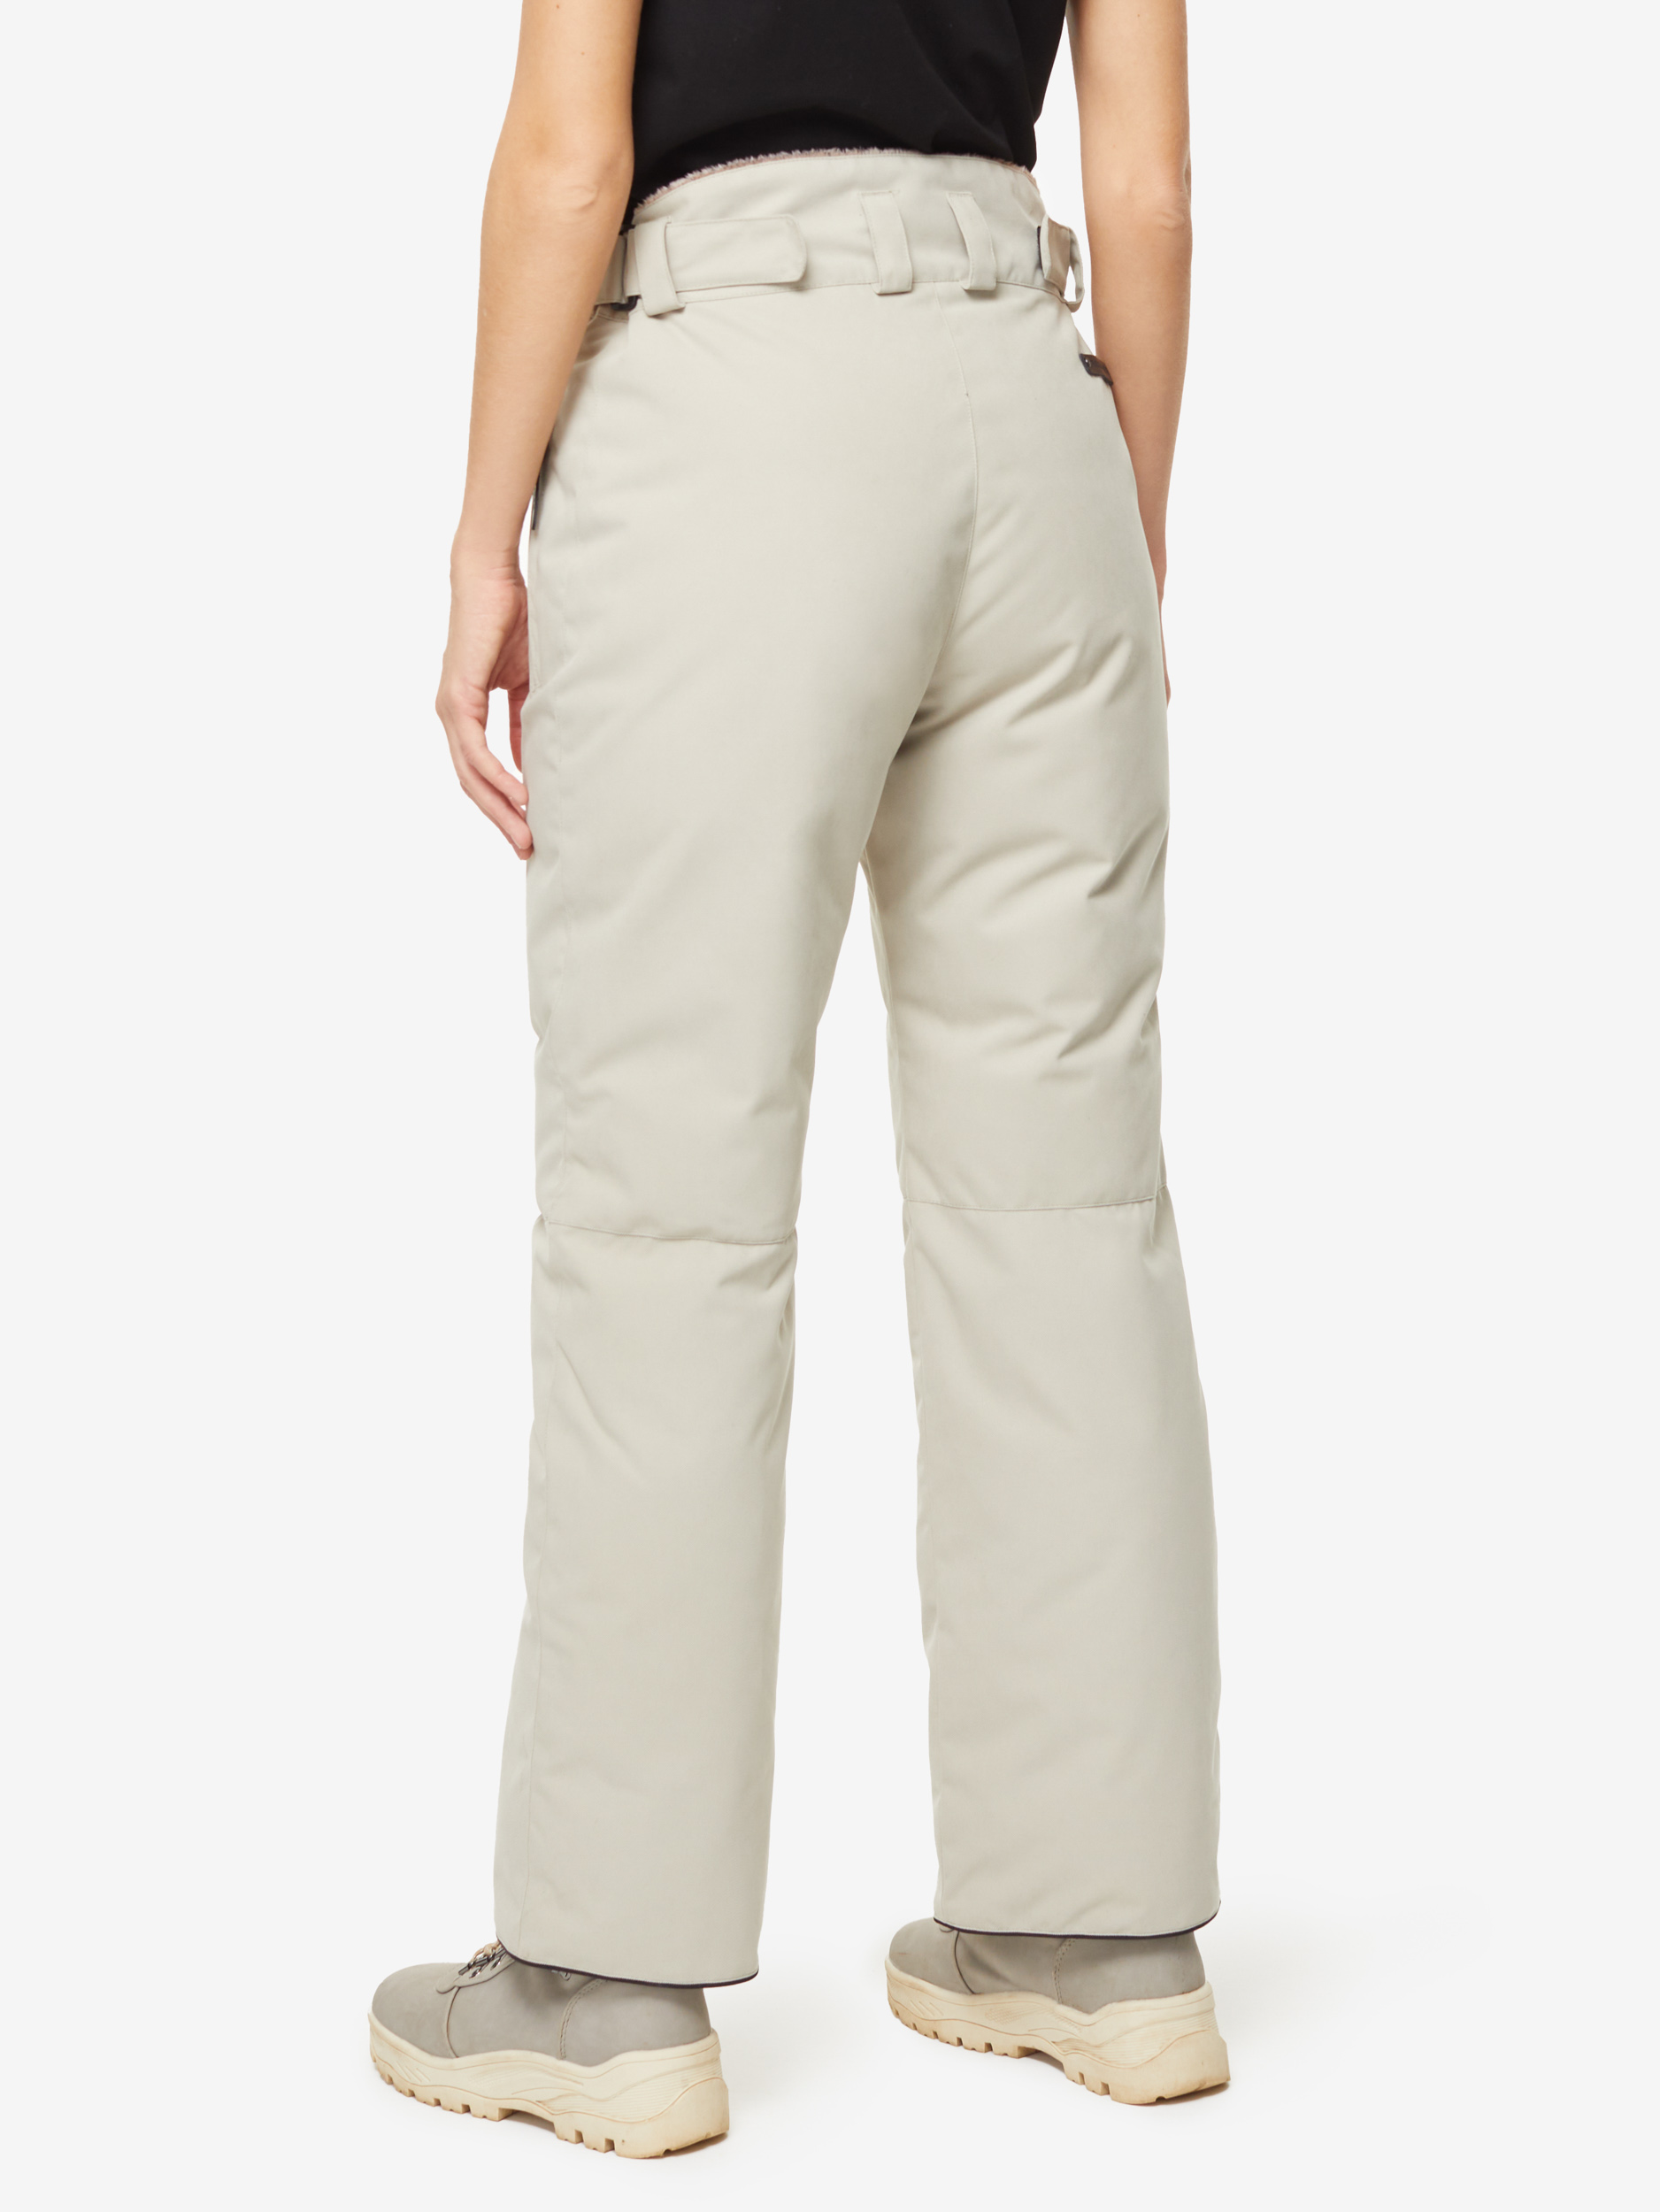 Пуховые брюки BASK, размер 50, цвет коричневый 3780-9905-050 MANARAGA - фото 3